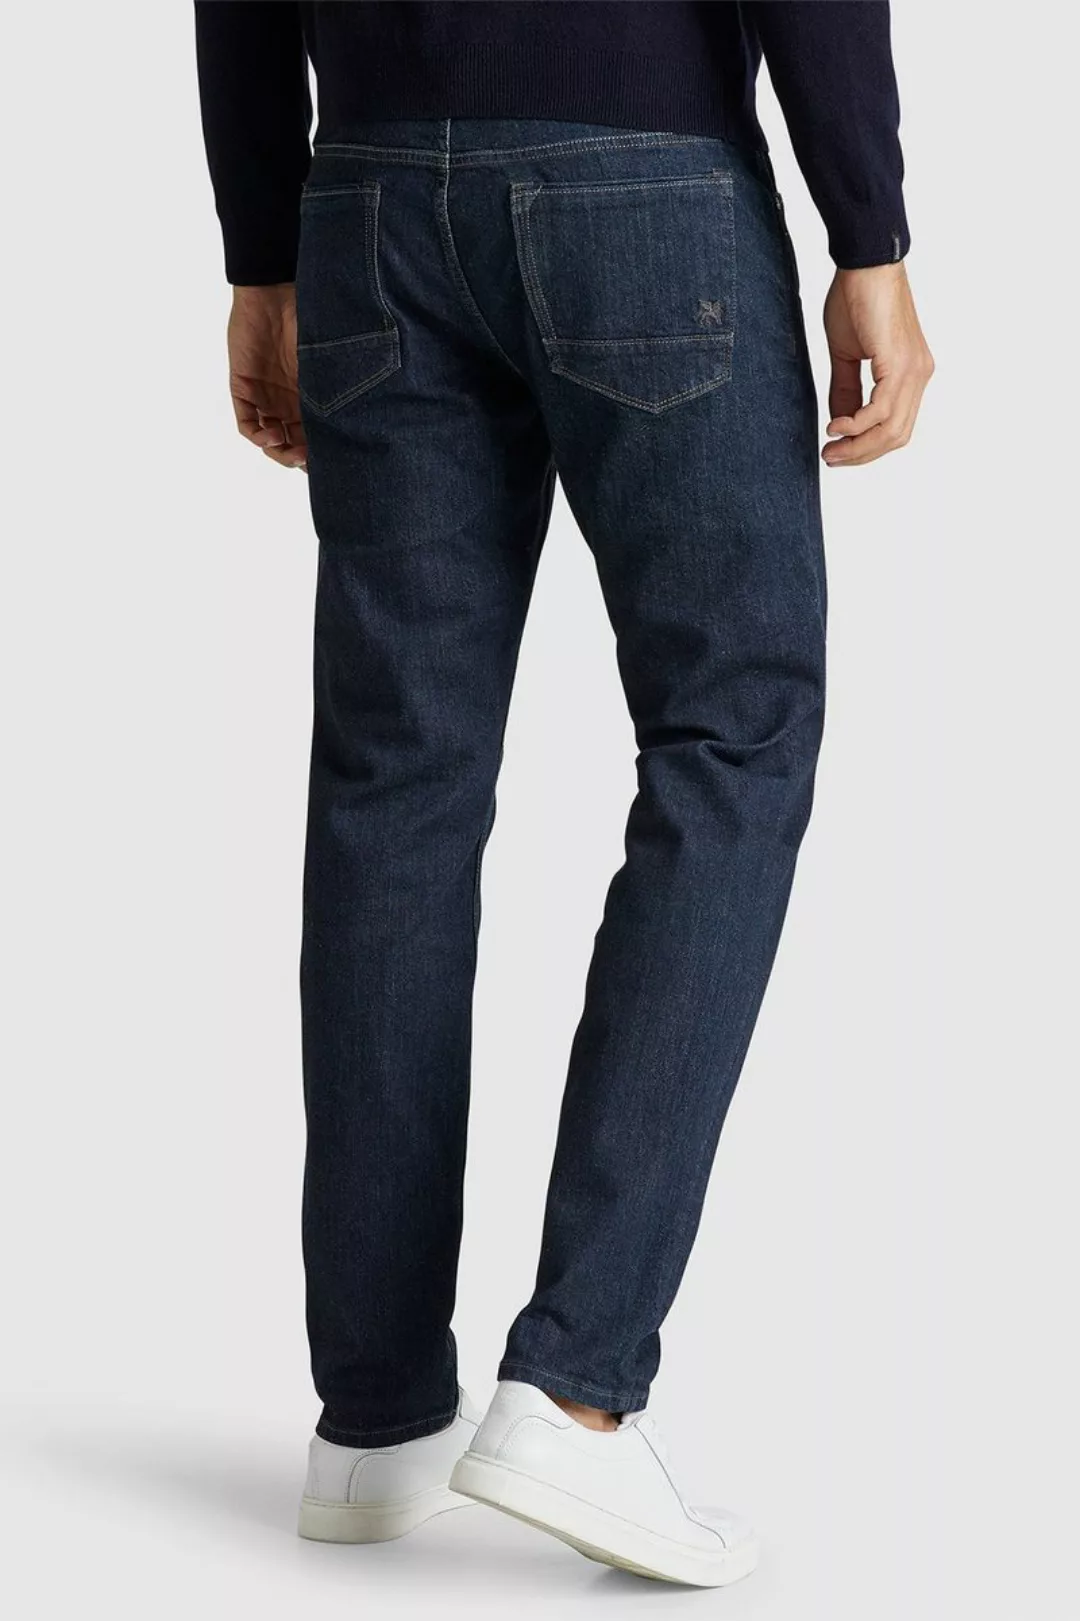 Vanguard Jeans V7 Rider Dunkelblau - Größe W 31 - L 32 günstig online kaufen